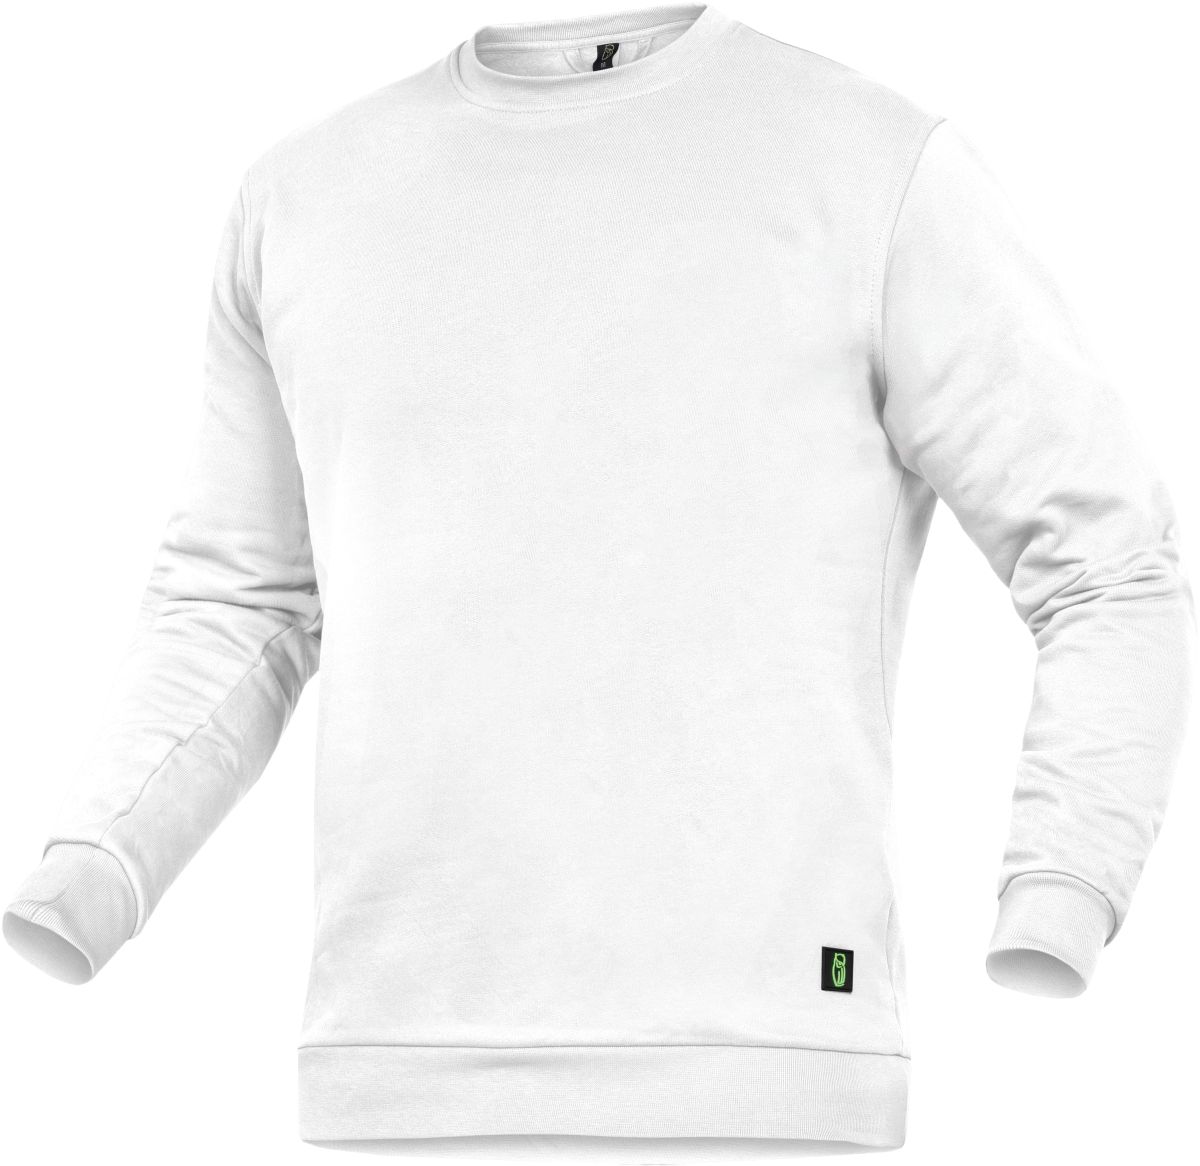 Rundhals-Sweater "Alex" Classic Line Weiß Gr.XS - Leibwächter